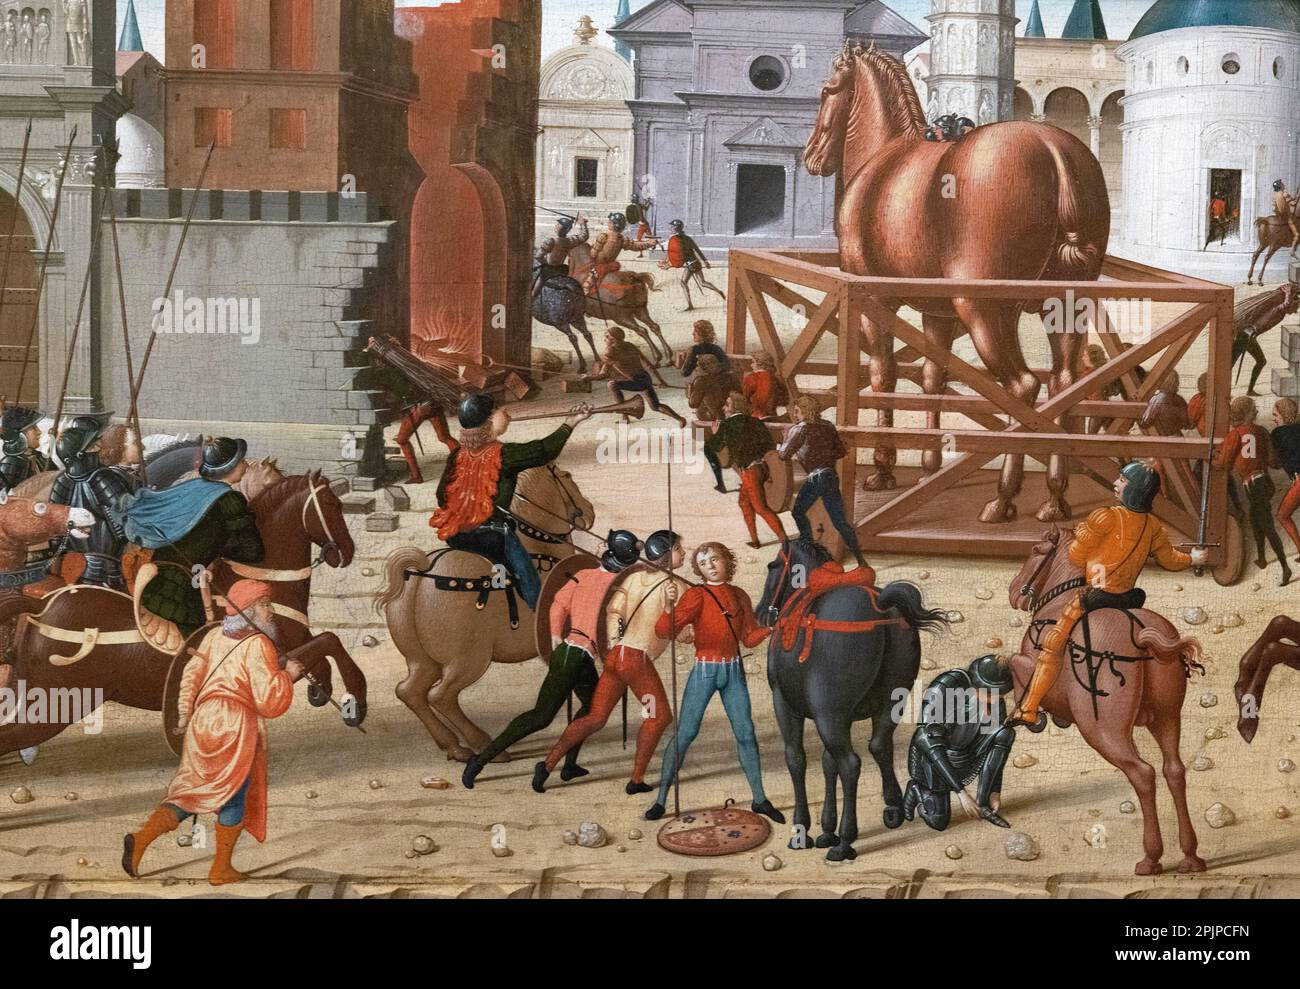 Biagio d’Antonio Tucci peinture; détail du siège de Troie, le cheval de bois, peintre italien de la Renaissance 15th siècle, 1400s; cheval de Troie. Banque D'Images